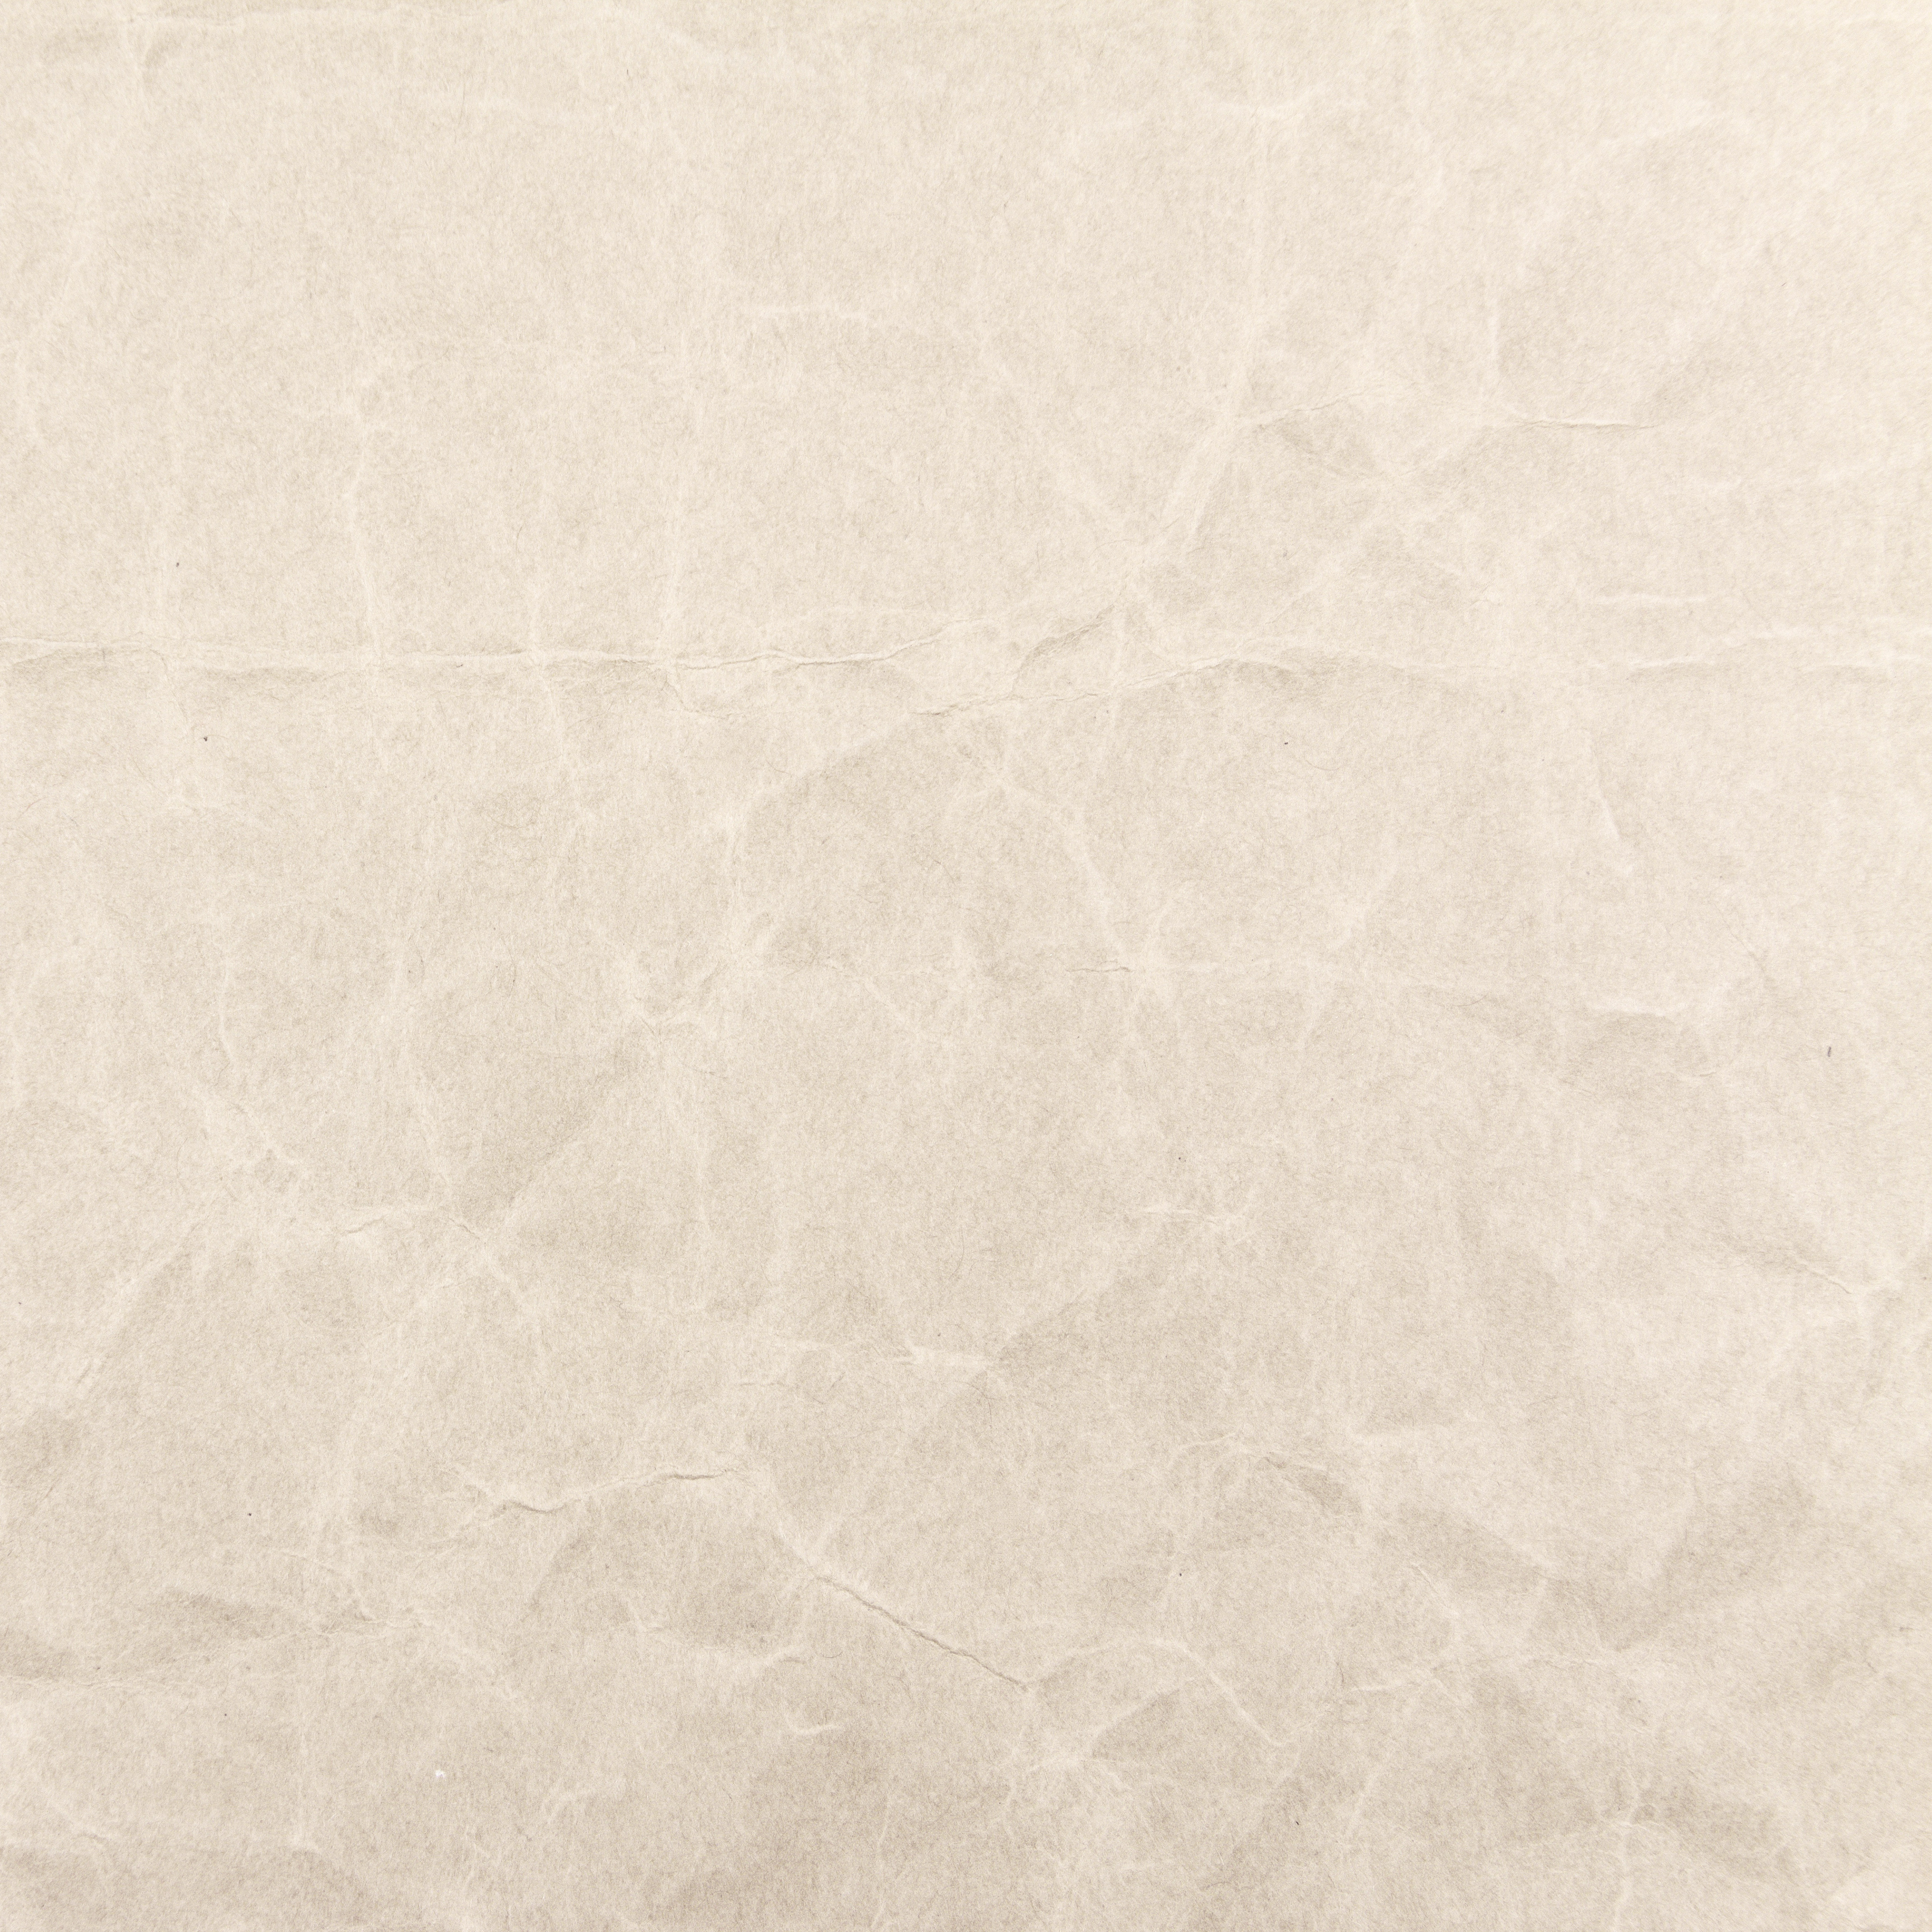 Grunge paper texture photo